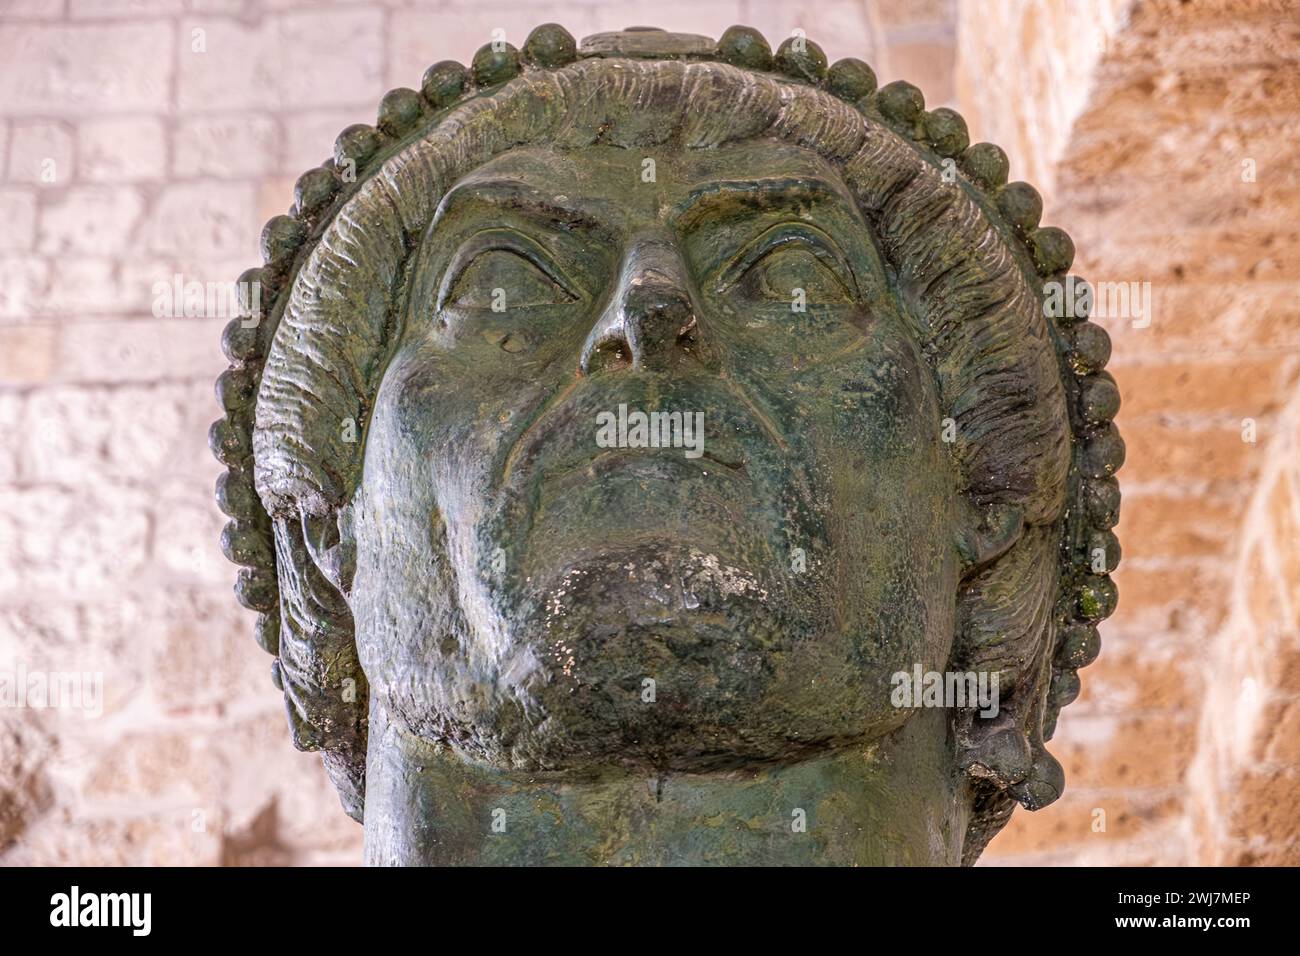 Eraclio head  ( colosso di Barletta) at the plaster cast gallery of the Norman Swabian Castle ( Castello Normanno Svevo), Bari, Puglia region, (Apulia Stock Photo